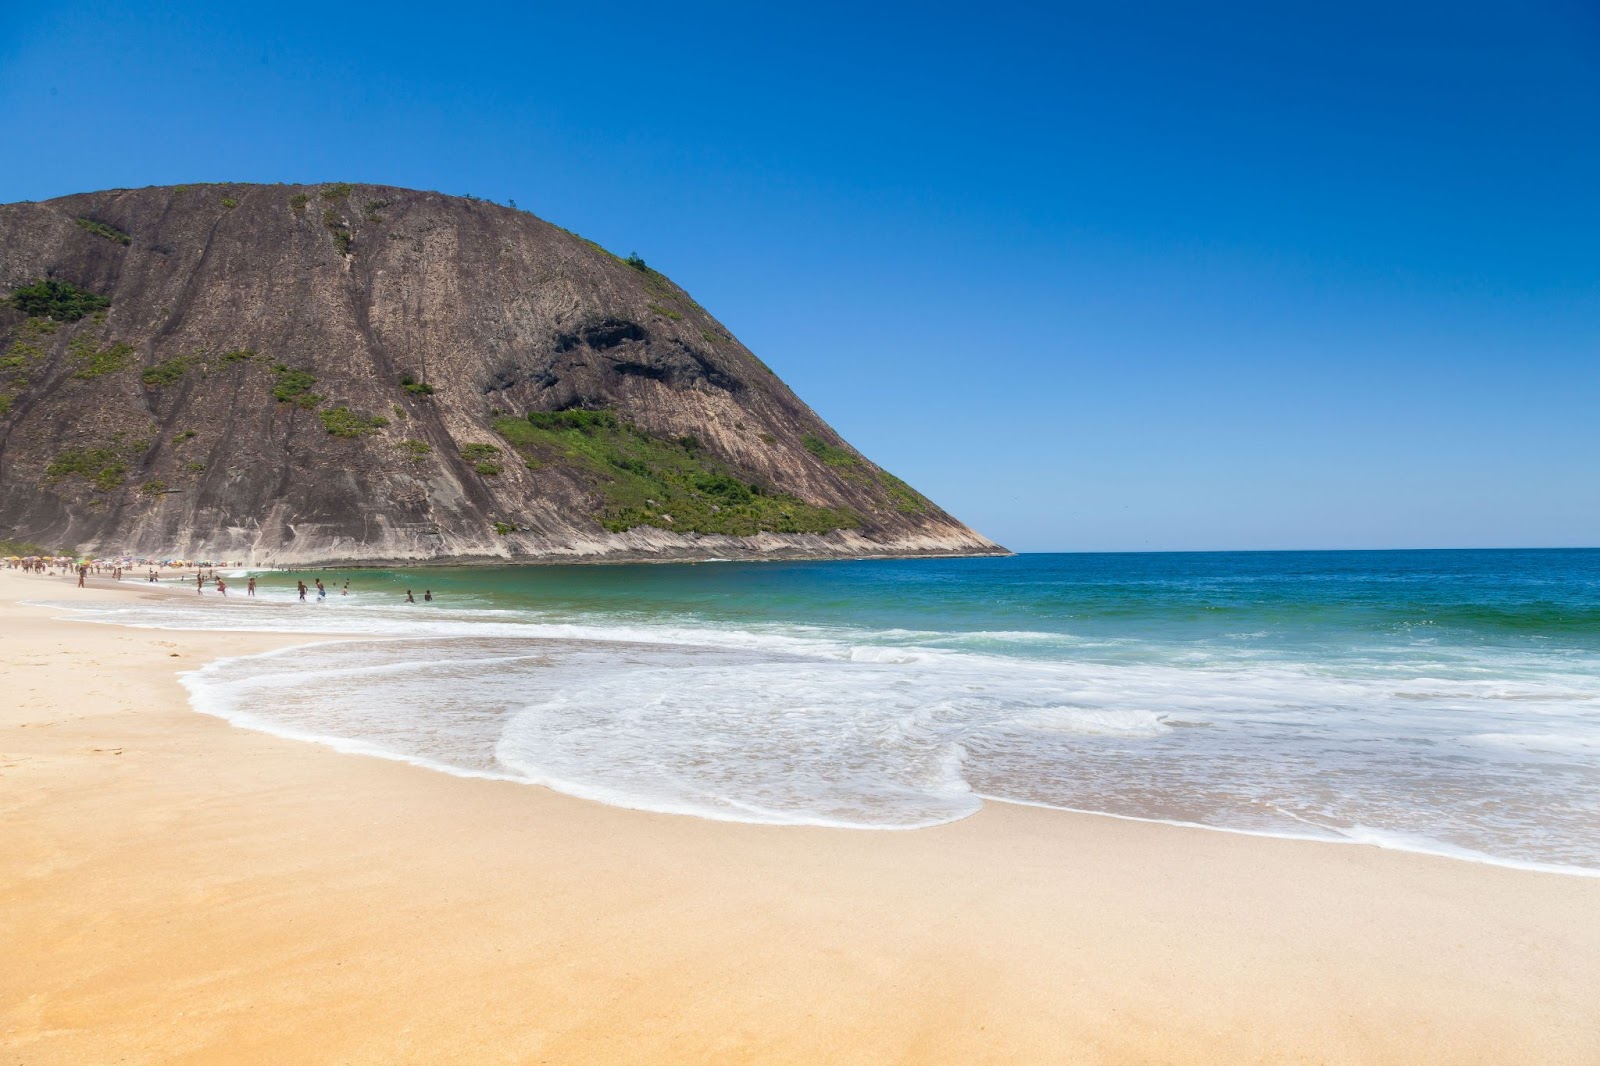 Praia com mar azul sem ondas chegando a areia dourada. Grande rocha ao lado esquerdo da foto.